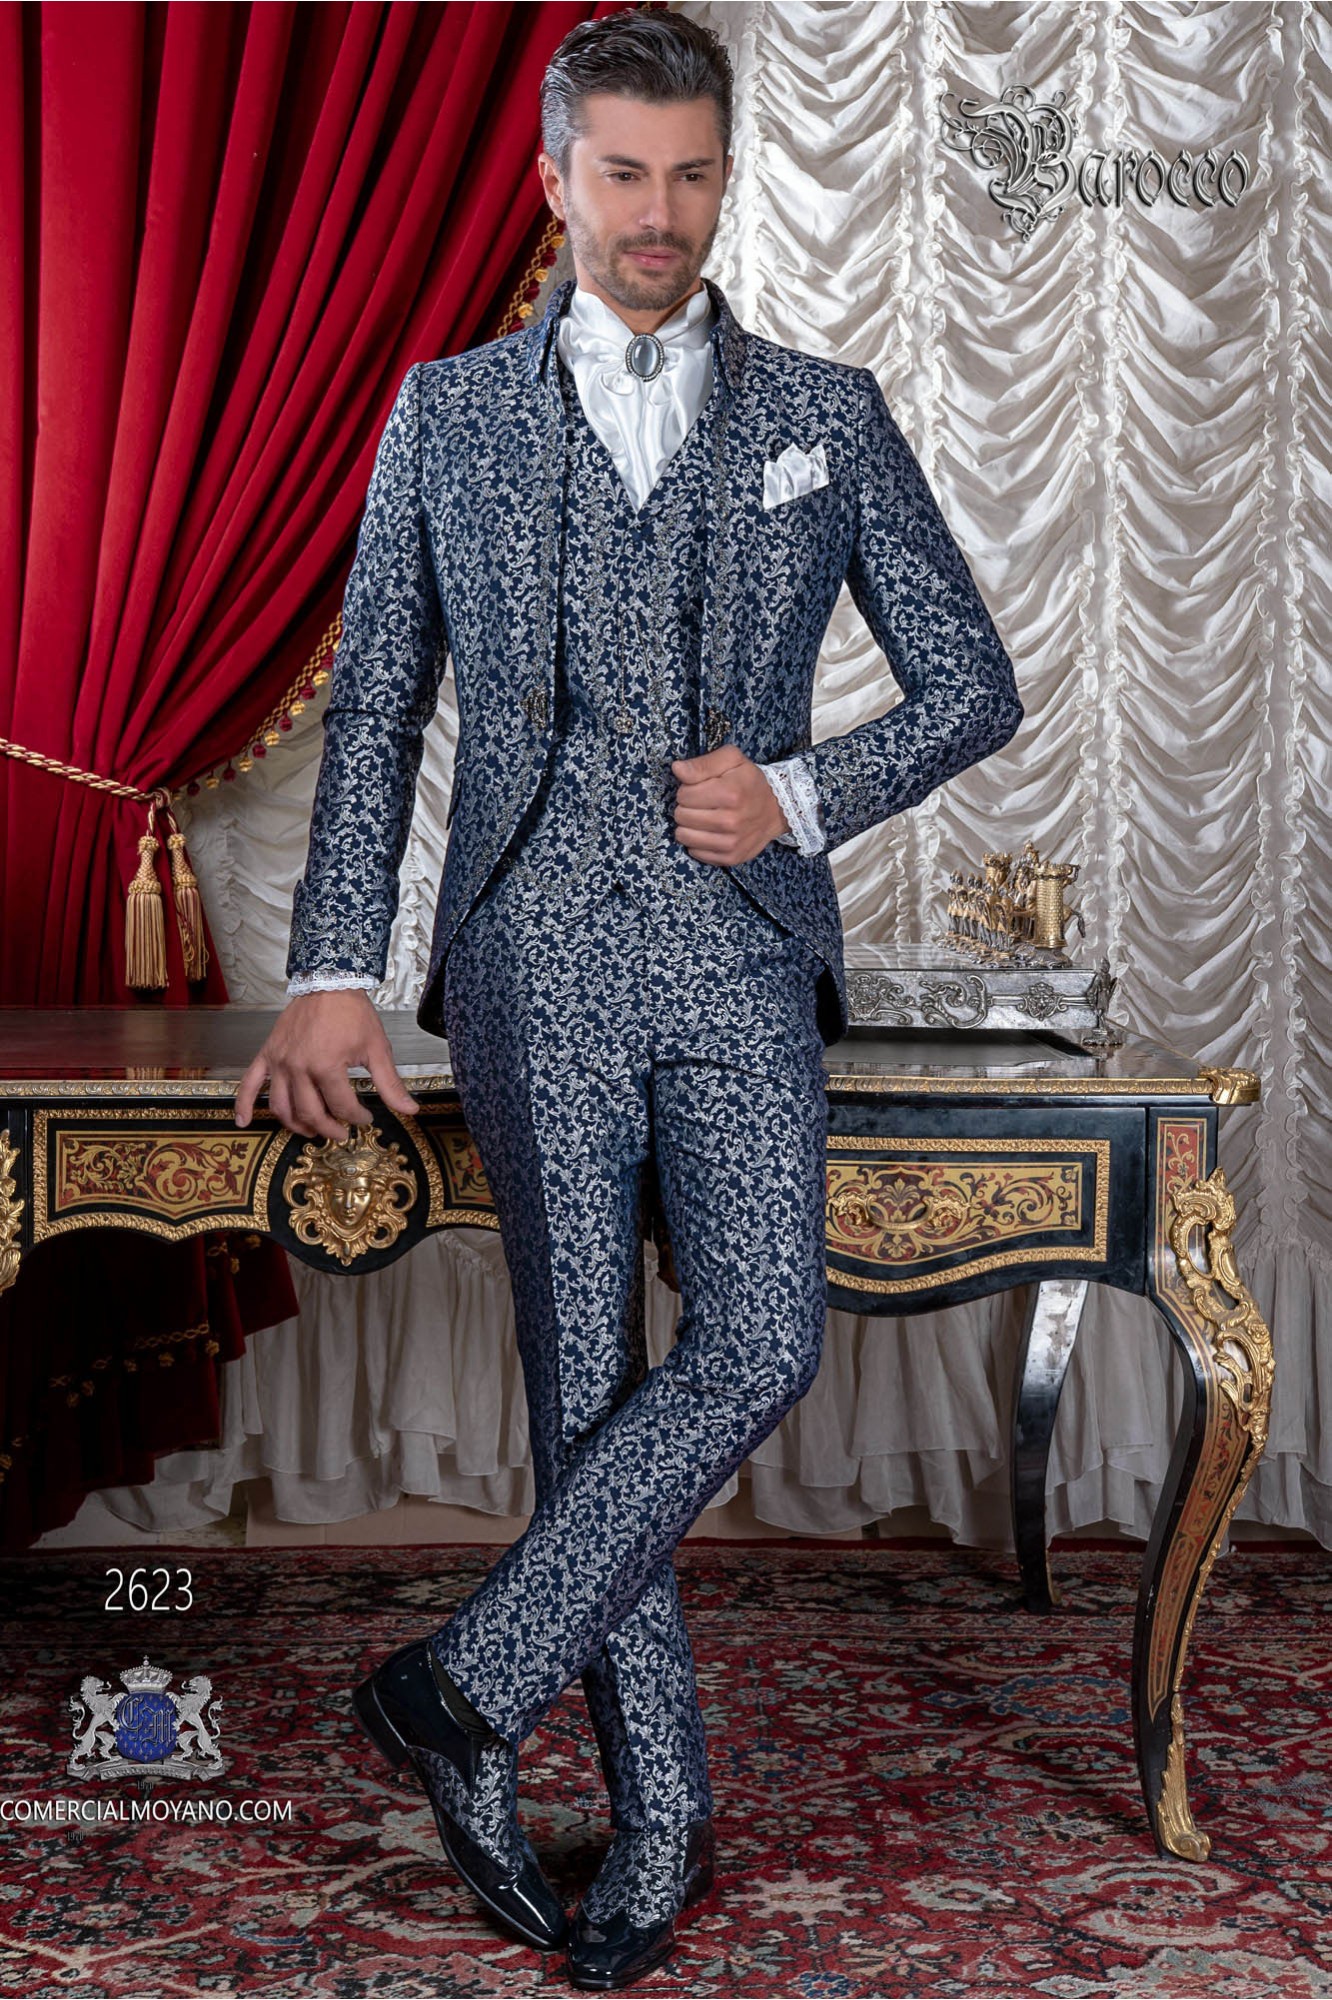 Traje de novio barroco, levita de época cuello Napoleón en tejido jacquard azul y plata con bordados plateados modelo: 2623 Mario Moyano colección Barroco